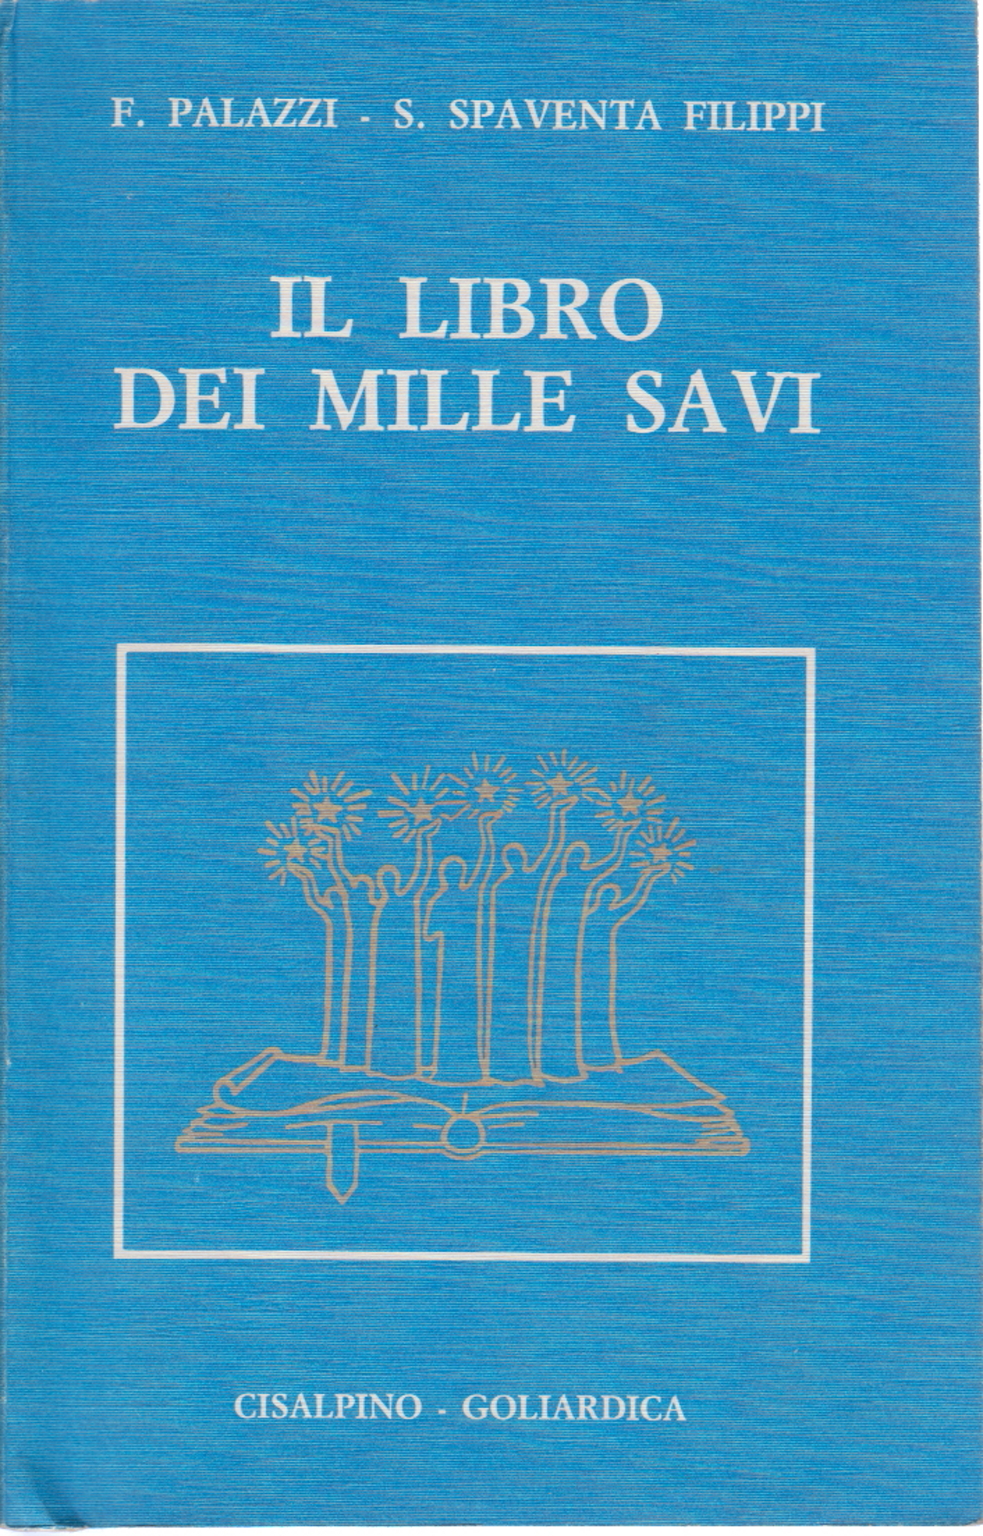 Il libro dei mille savi, F. Palazzi S. Spaventa Filippi